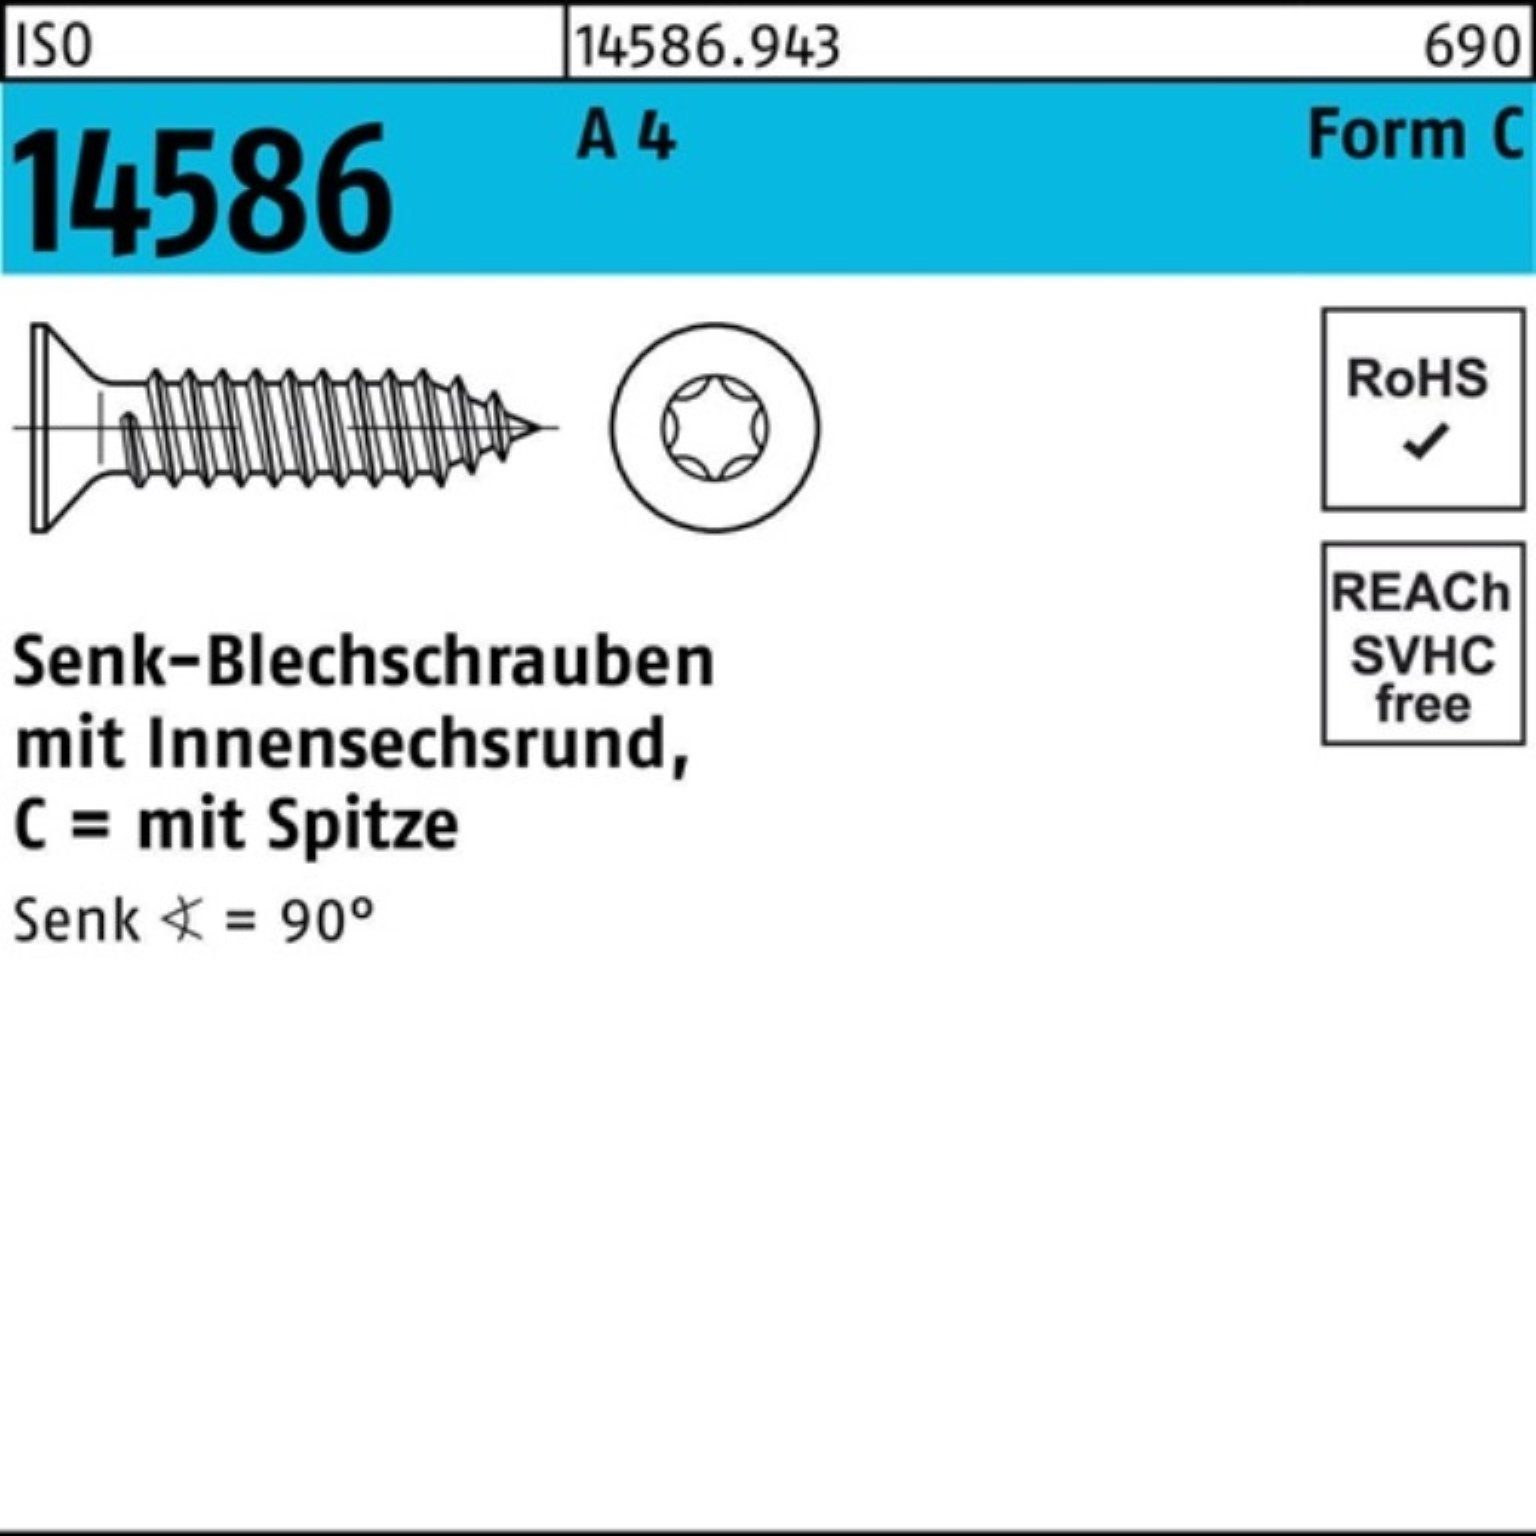 A 4,2x Pack Schraube 4 ISR/Spitze Reyher Senkblechschraube 500 32-T20 ISO 500er 14586